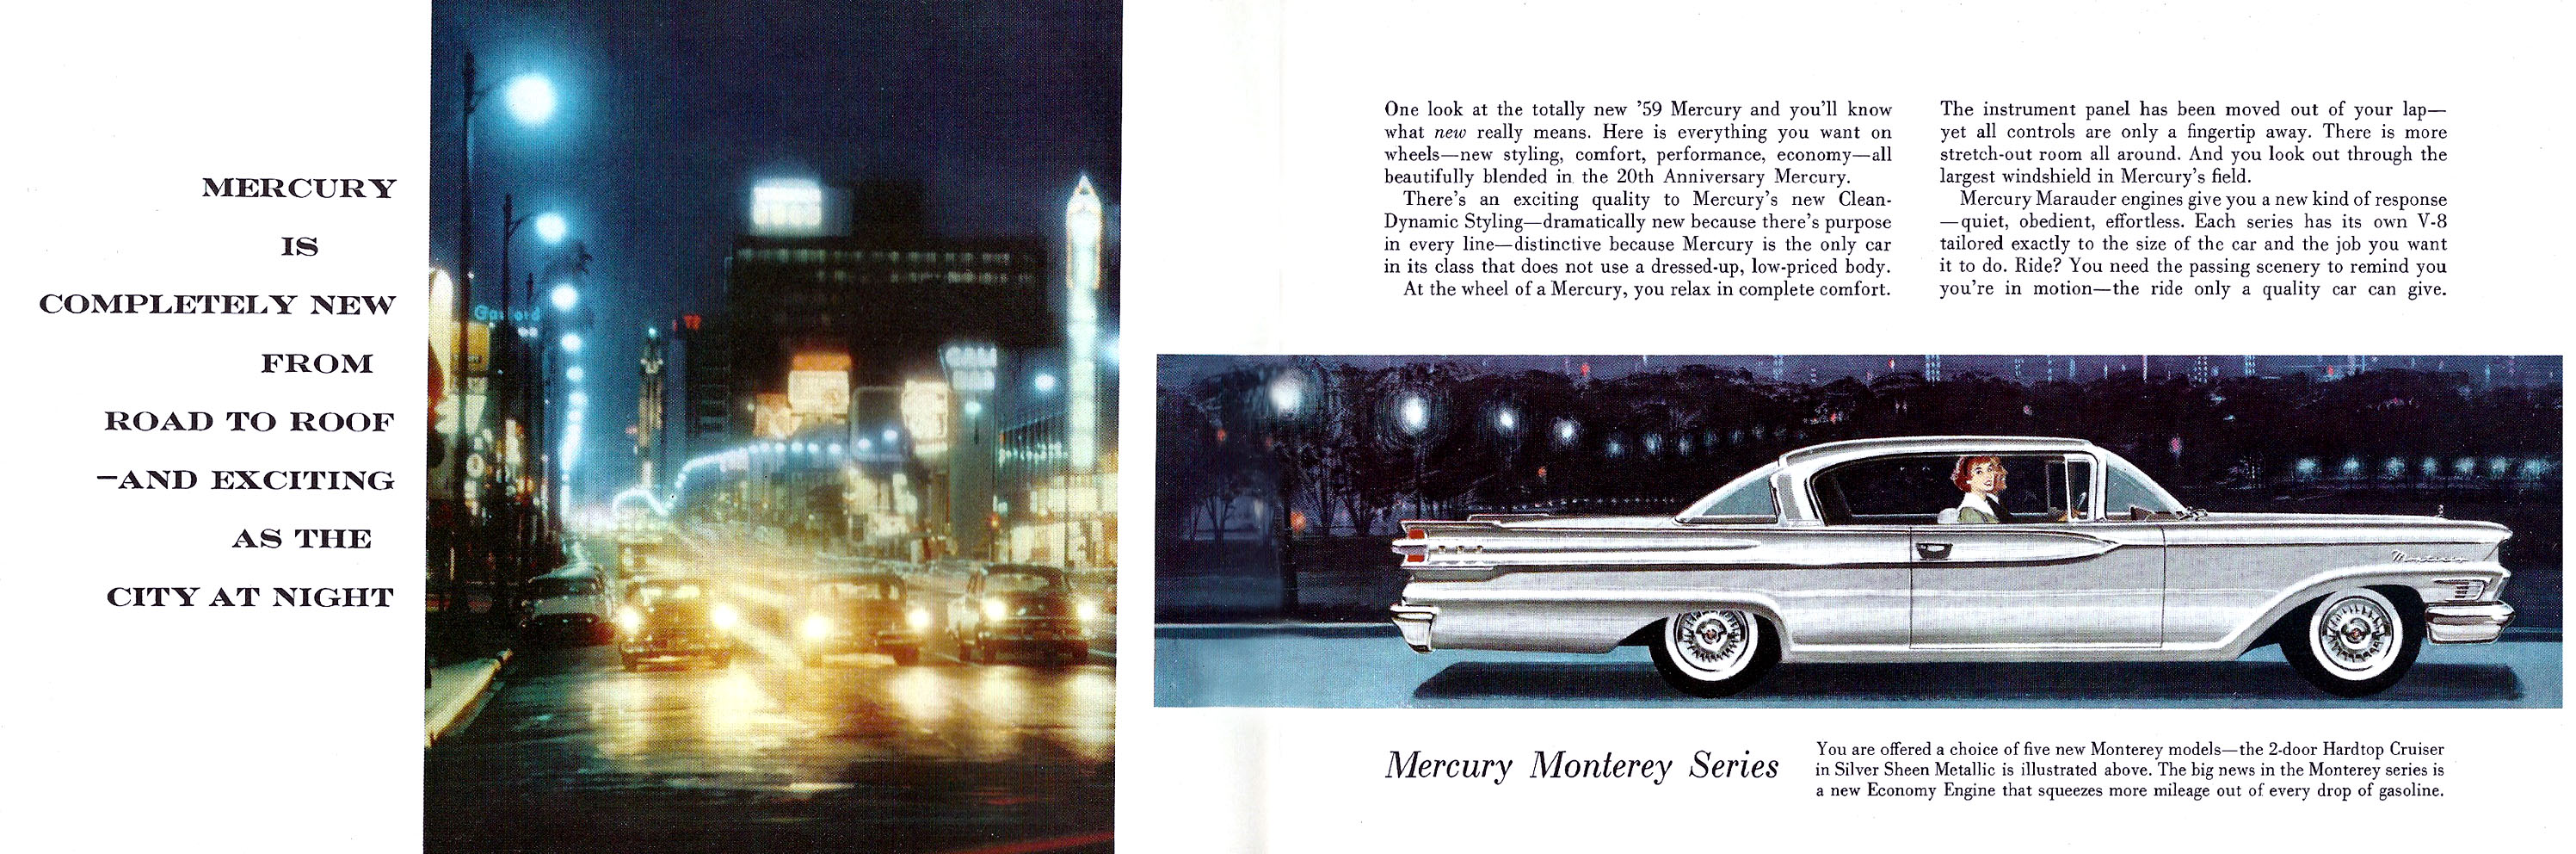 1959_Mercury-02-03